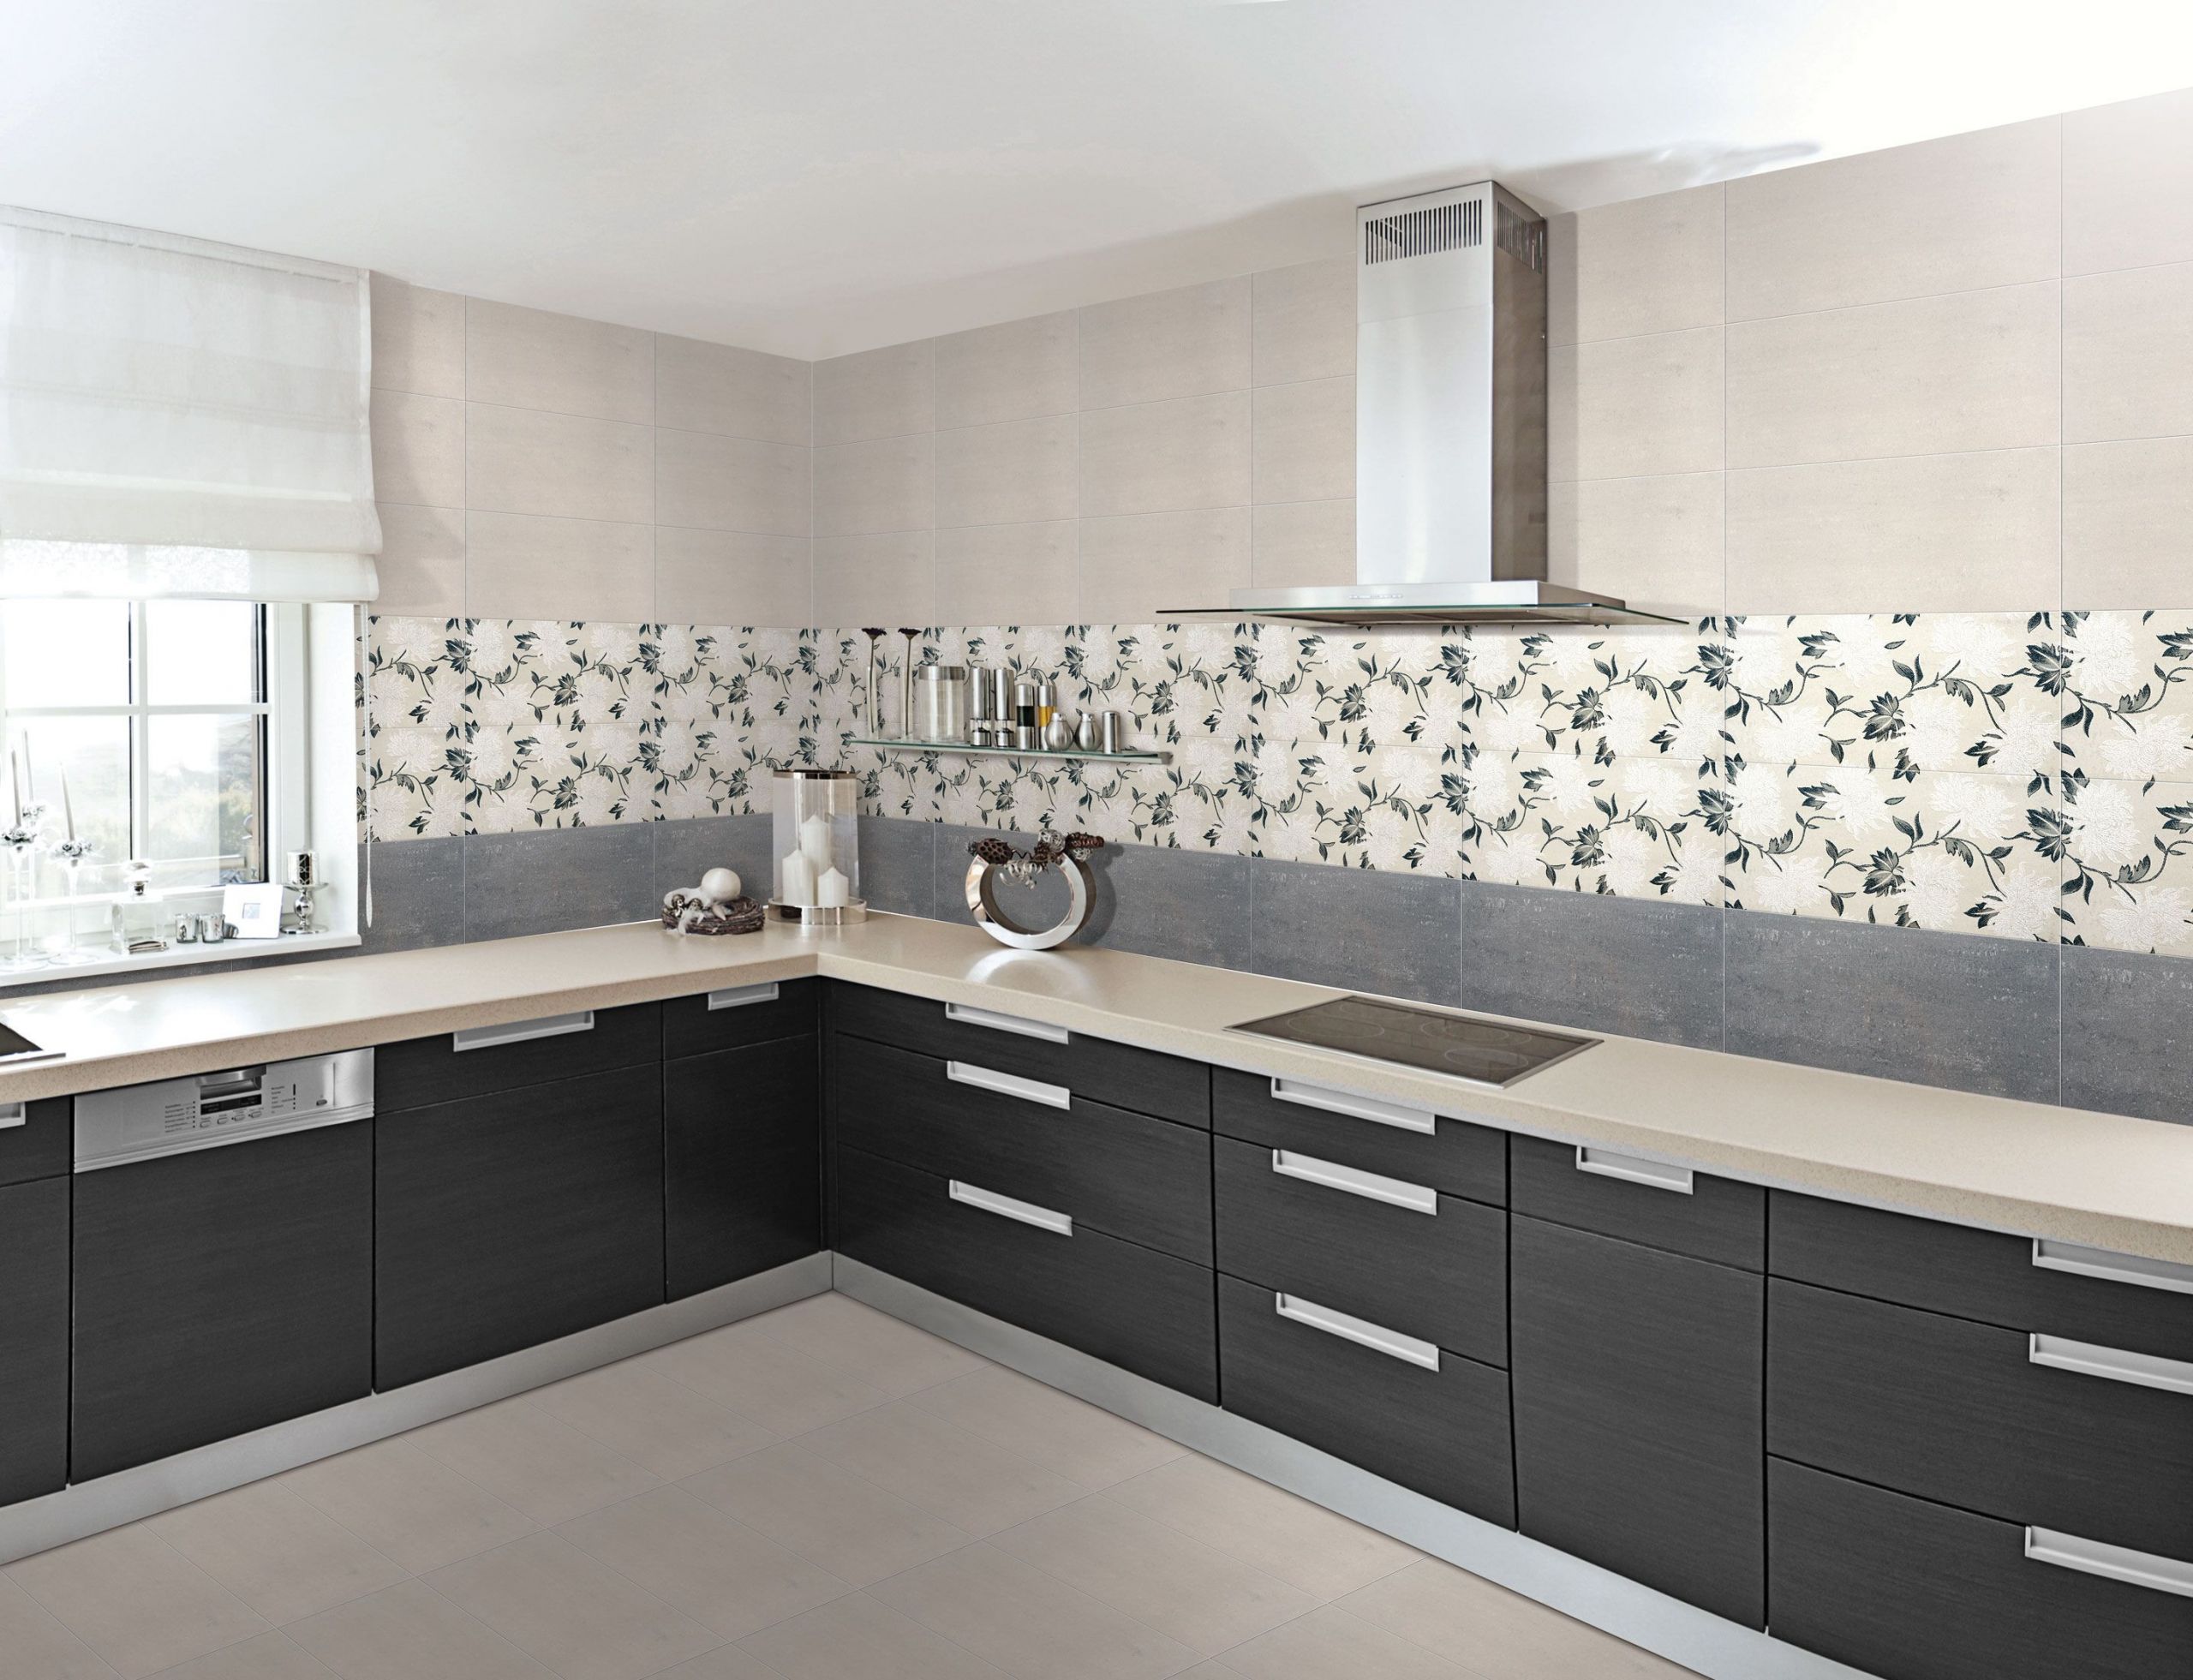 Kitchen Wall Tiles Design Ideas
 Buy Designer Floor Wall Tiles for Bathroom Bedroom